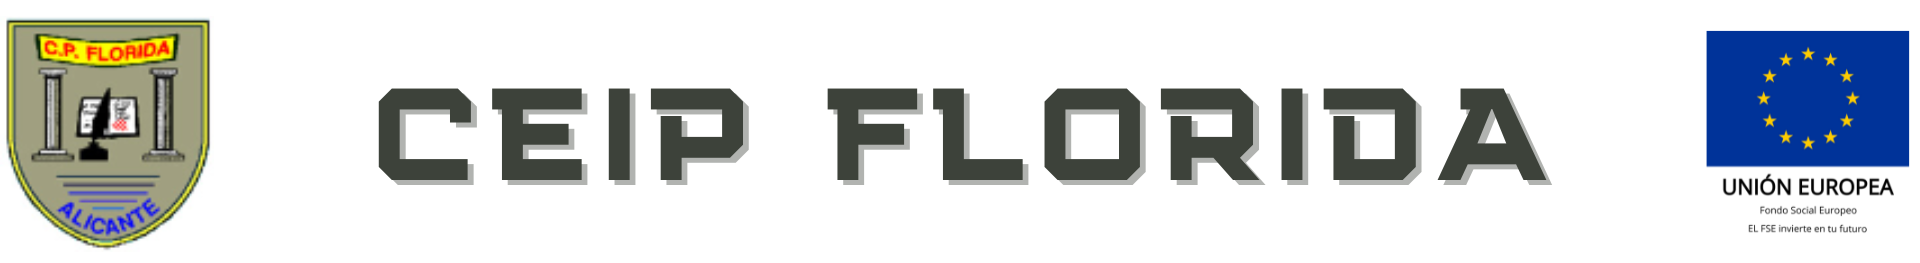 Logo CEIP FLORIDA